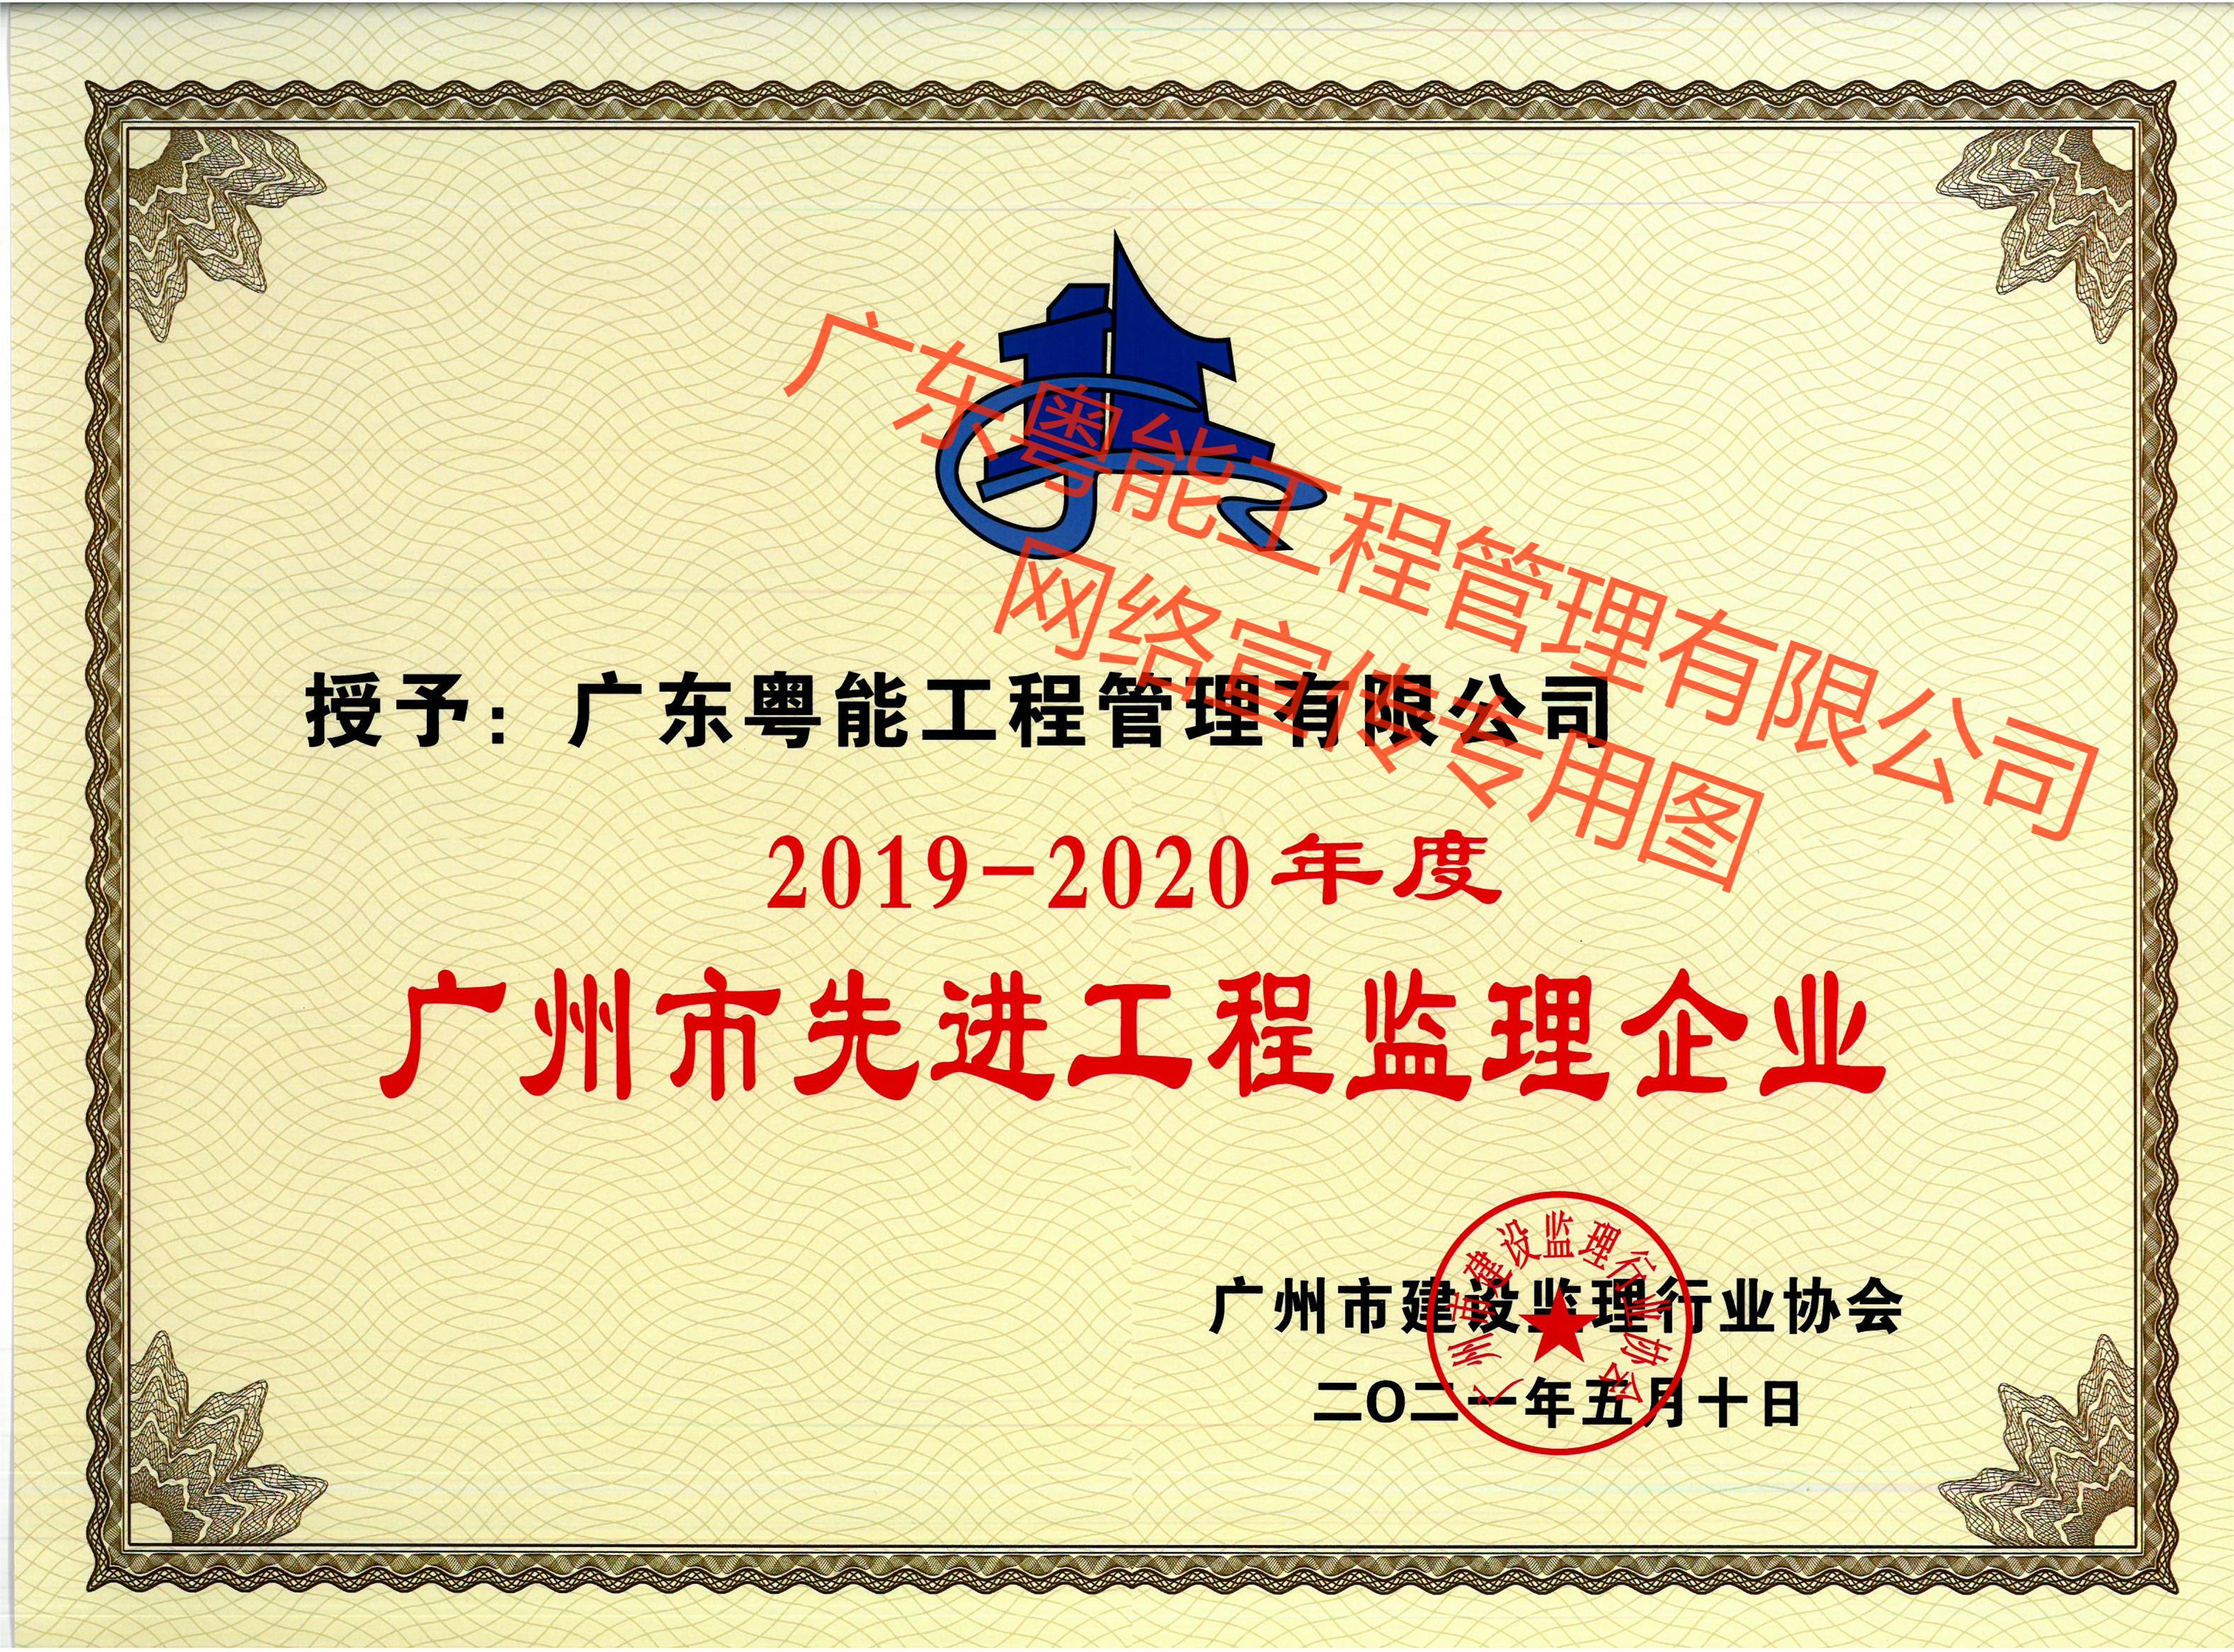 荣获2019-2020年度广州市先进工程监理企业